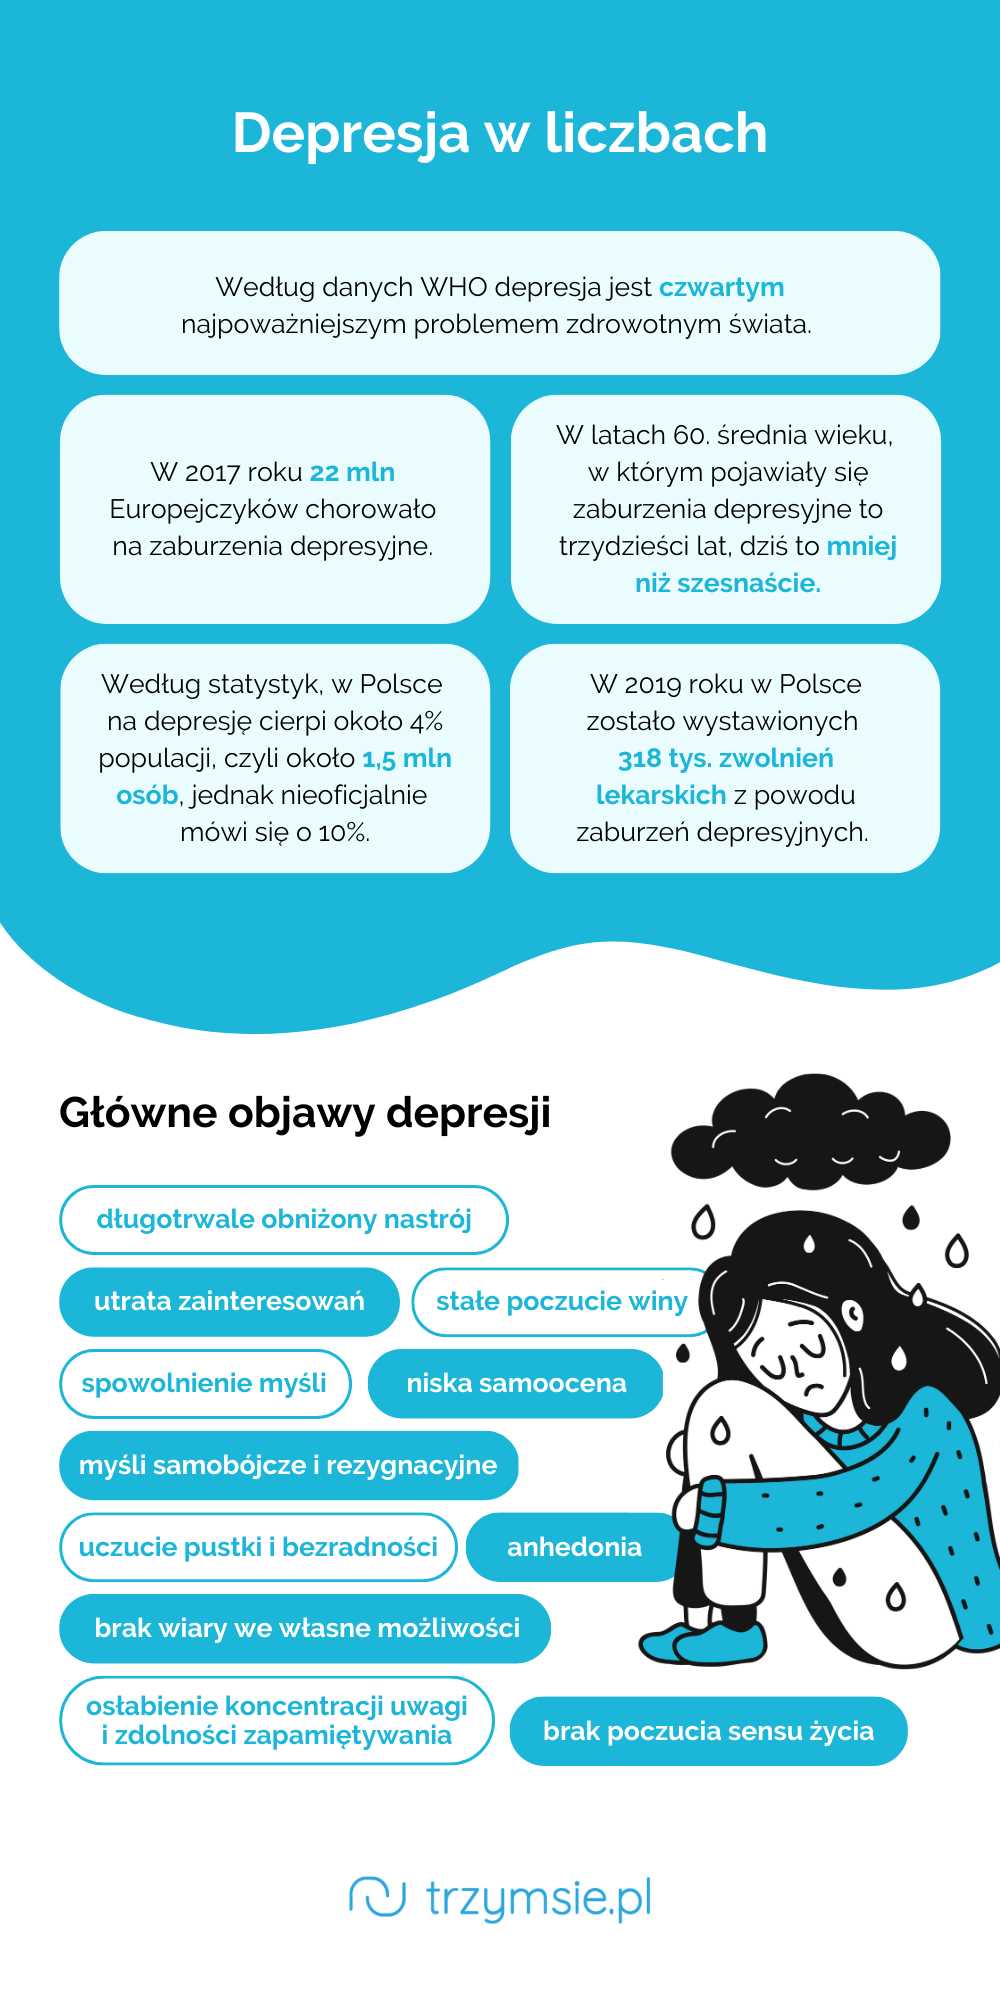 Sposoby radzenia sobie ze stanami depresyjnymi przed miesiączką